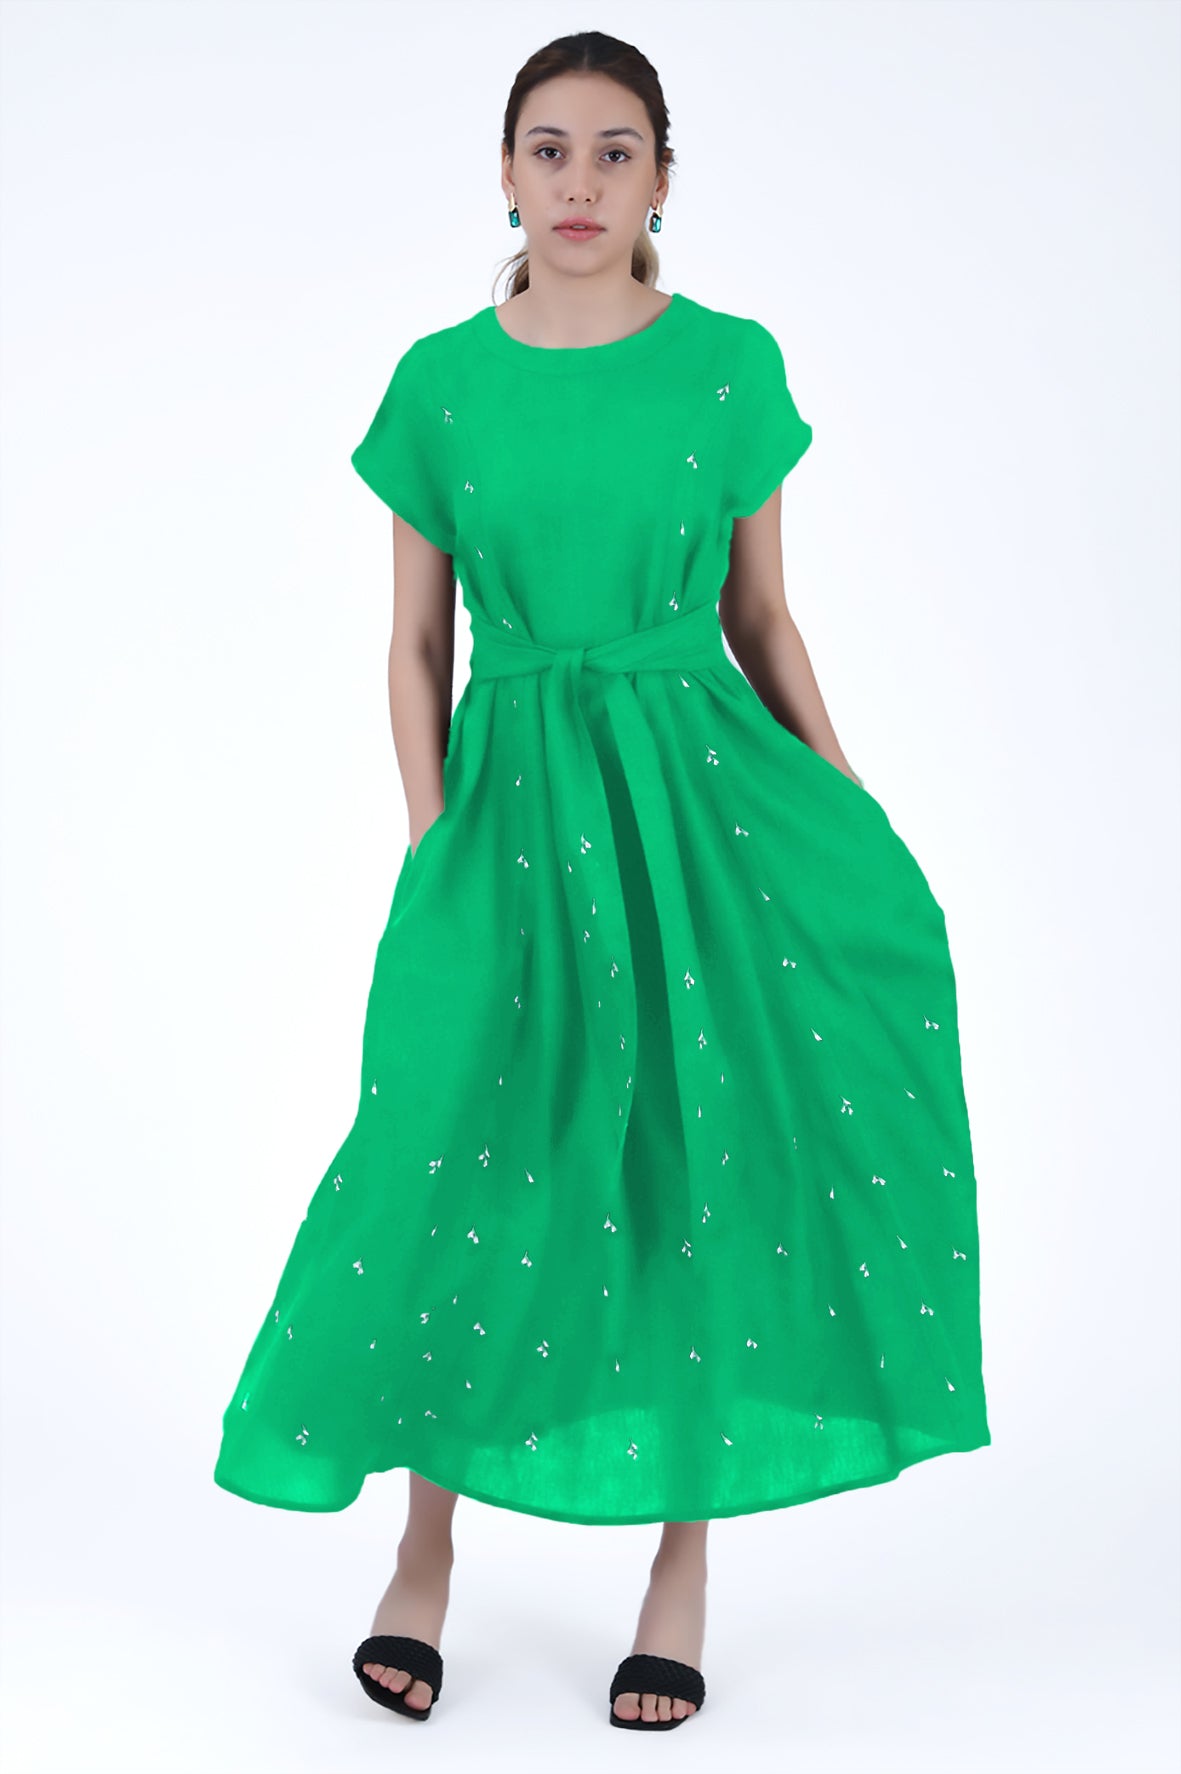 Zambak Dress In Kelly Green